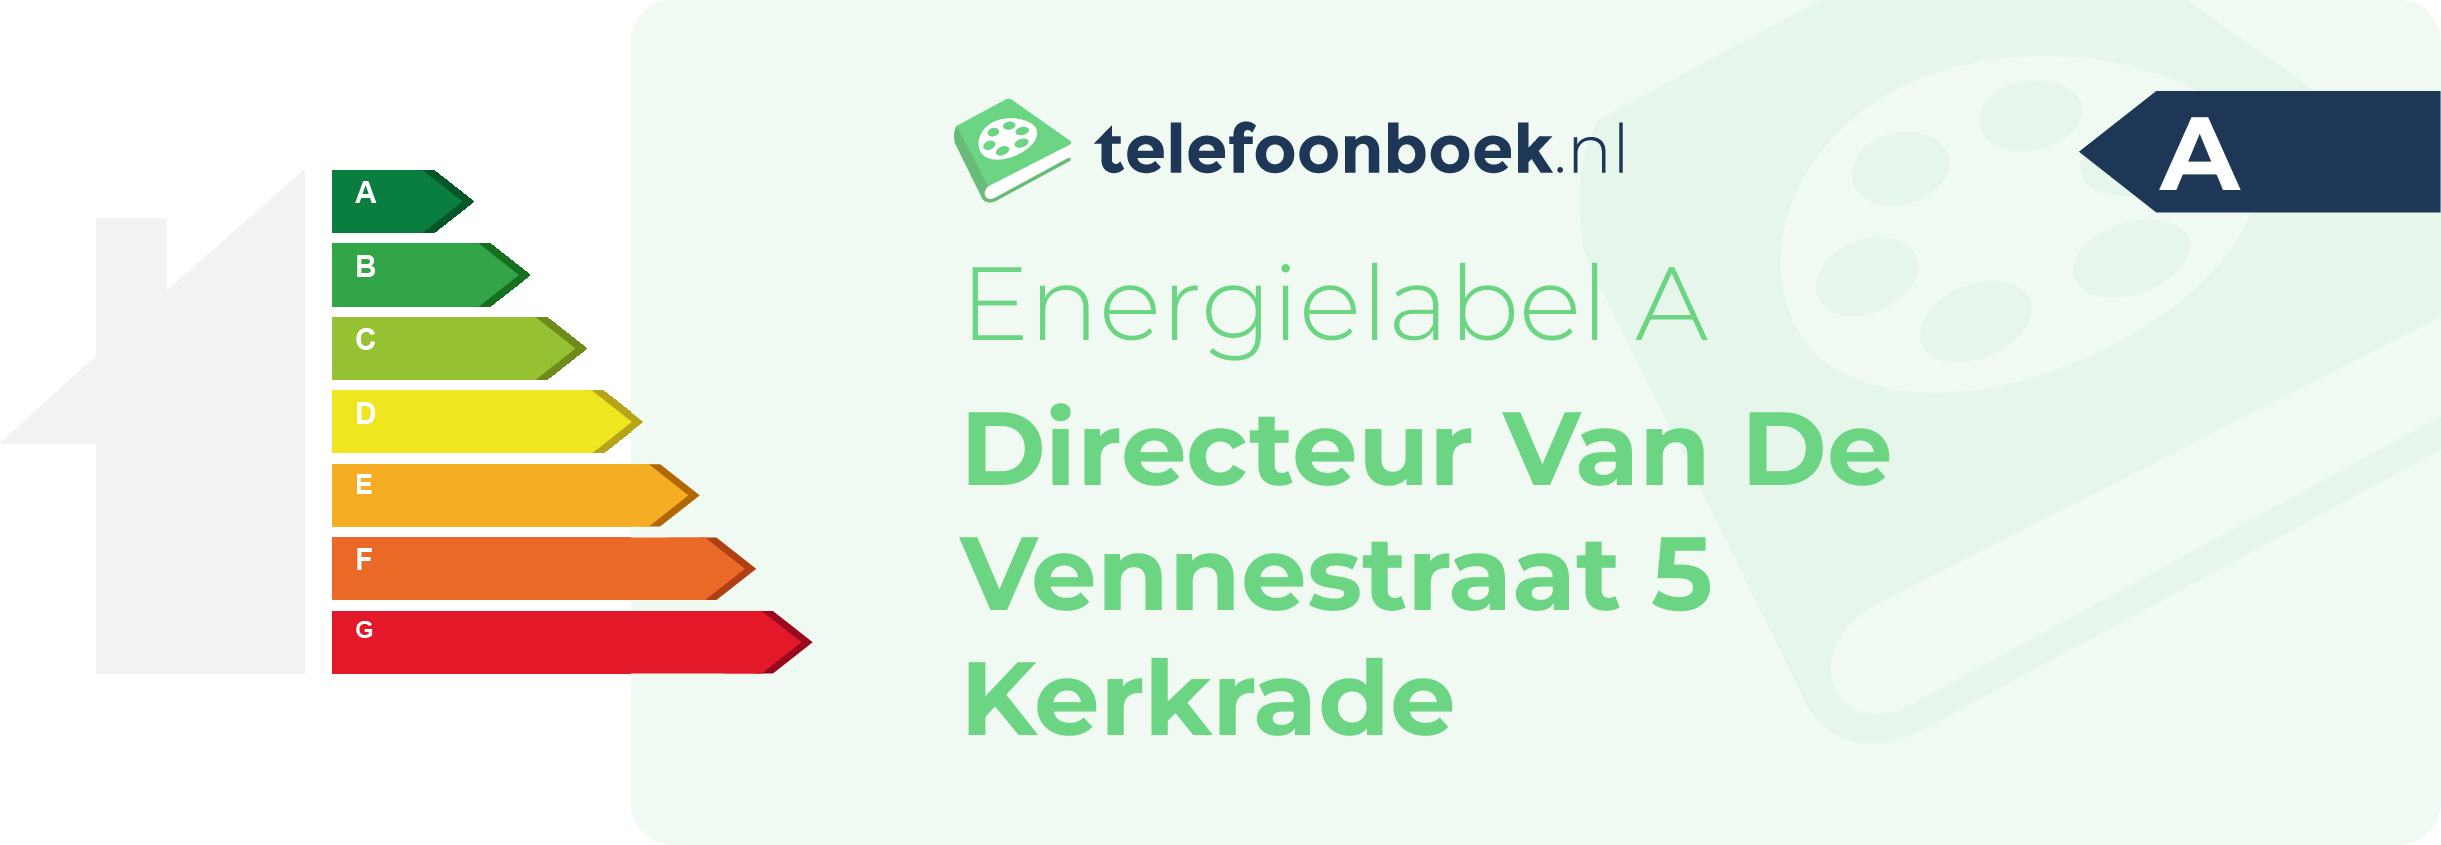 Energielabel Directeur Van De Vennestraat 5 Kerkrade